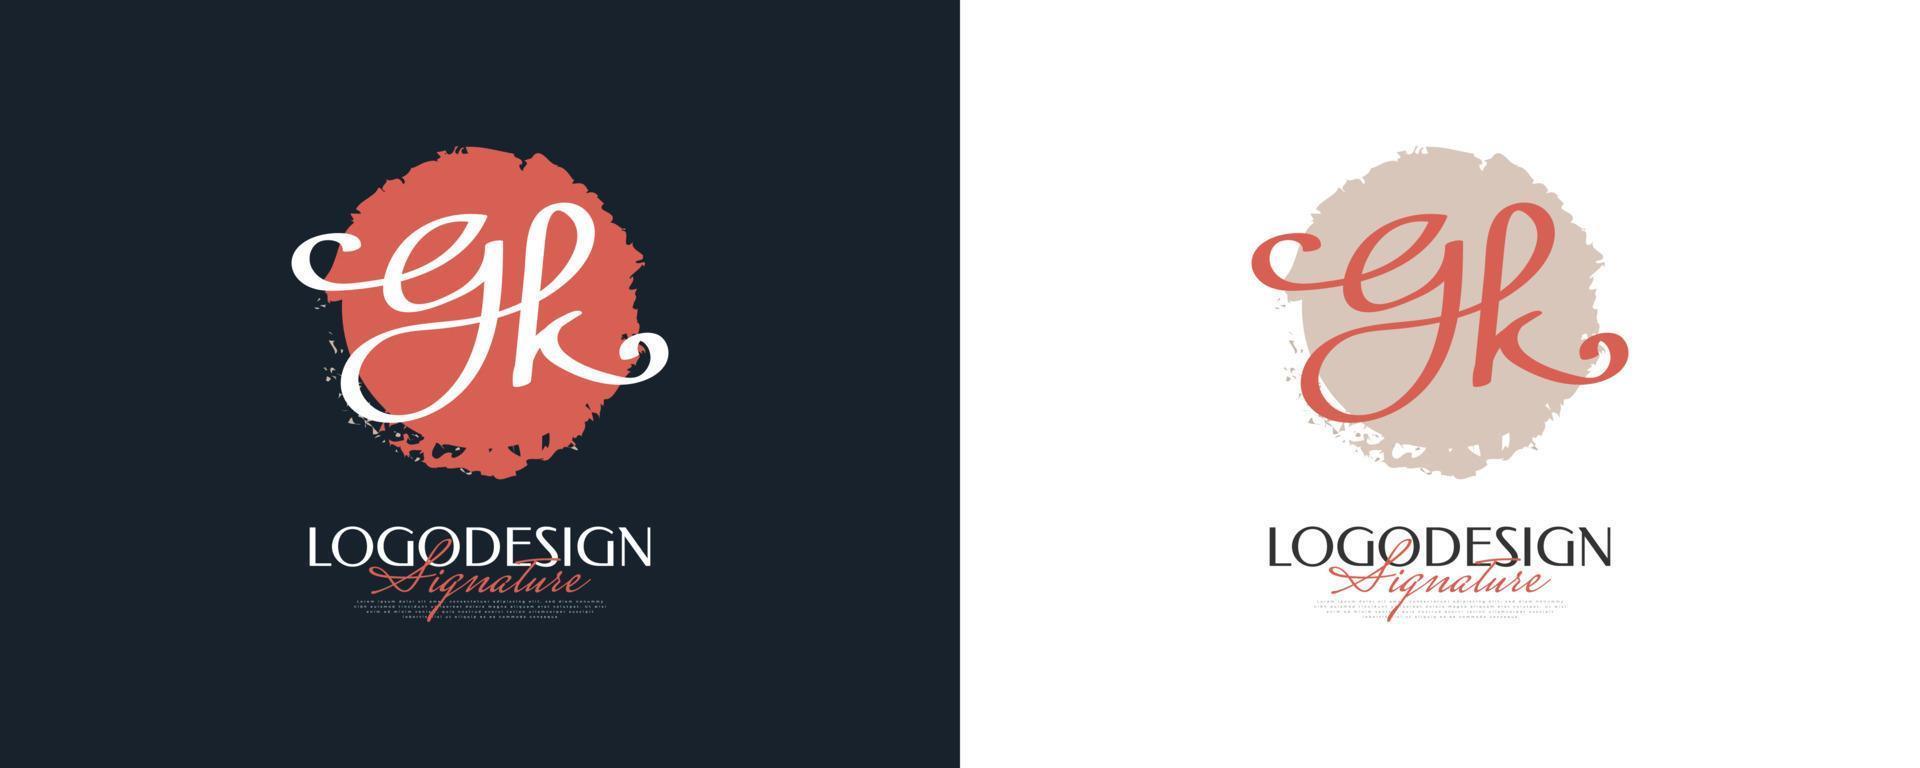 diseño inicial del logotipo g y k en un estilo de escritura elegante y minimalista. logotipo o símbolo de la firma gk para bodas, moda, joyería, boutique e identidad comercial vector